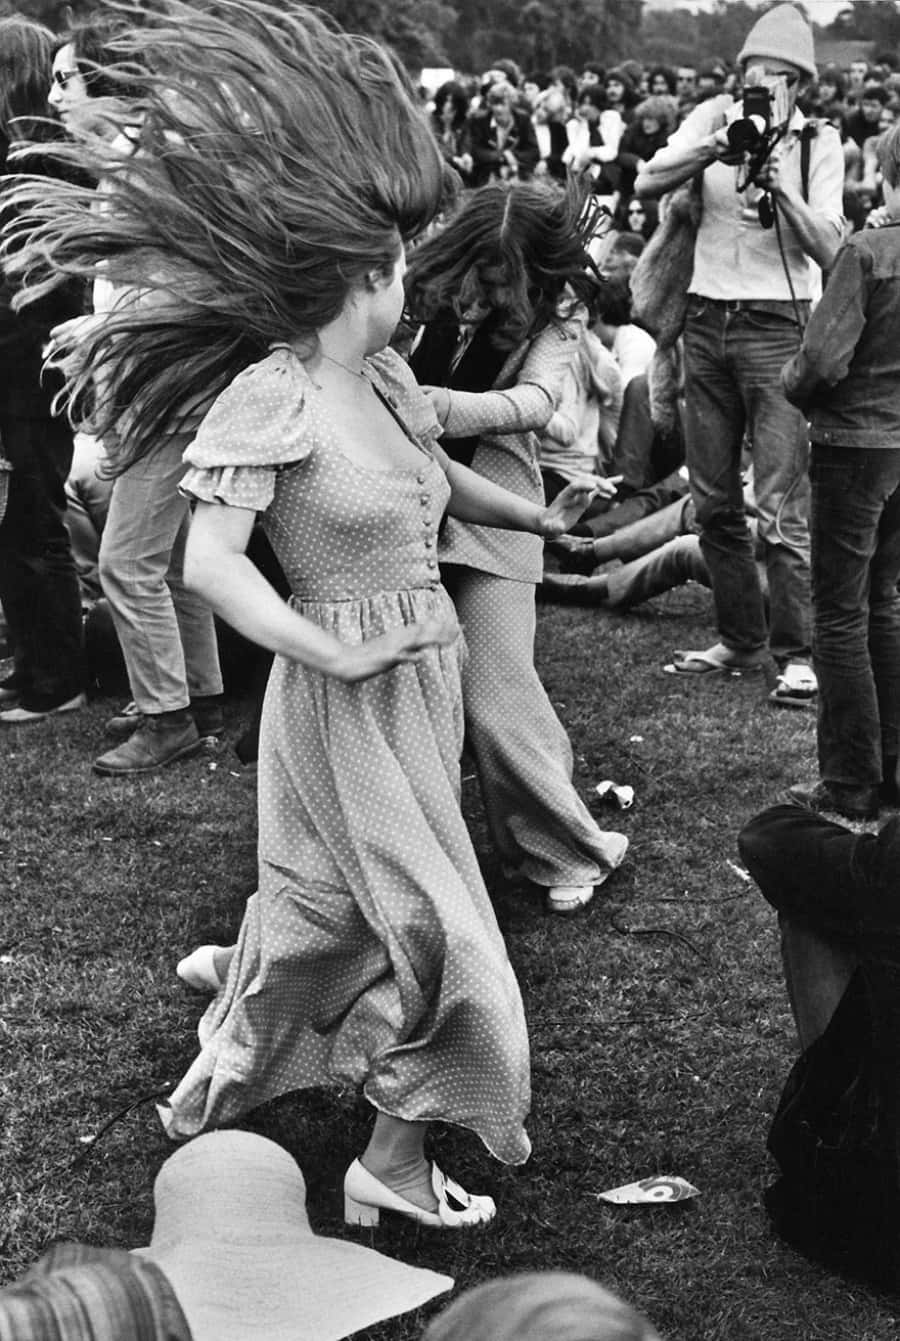 Iconic Woodstock